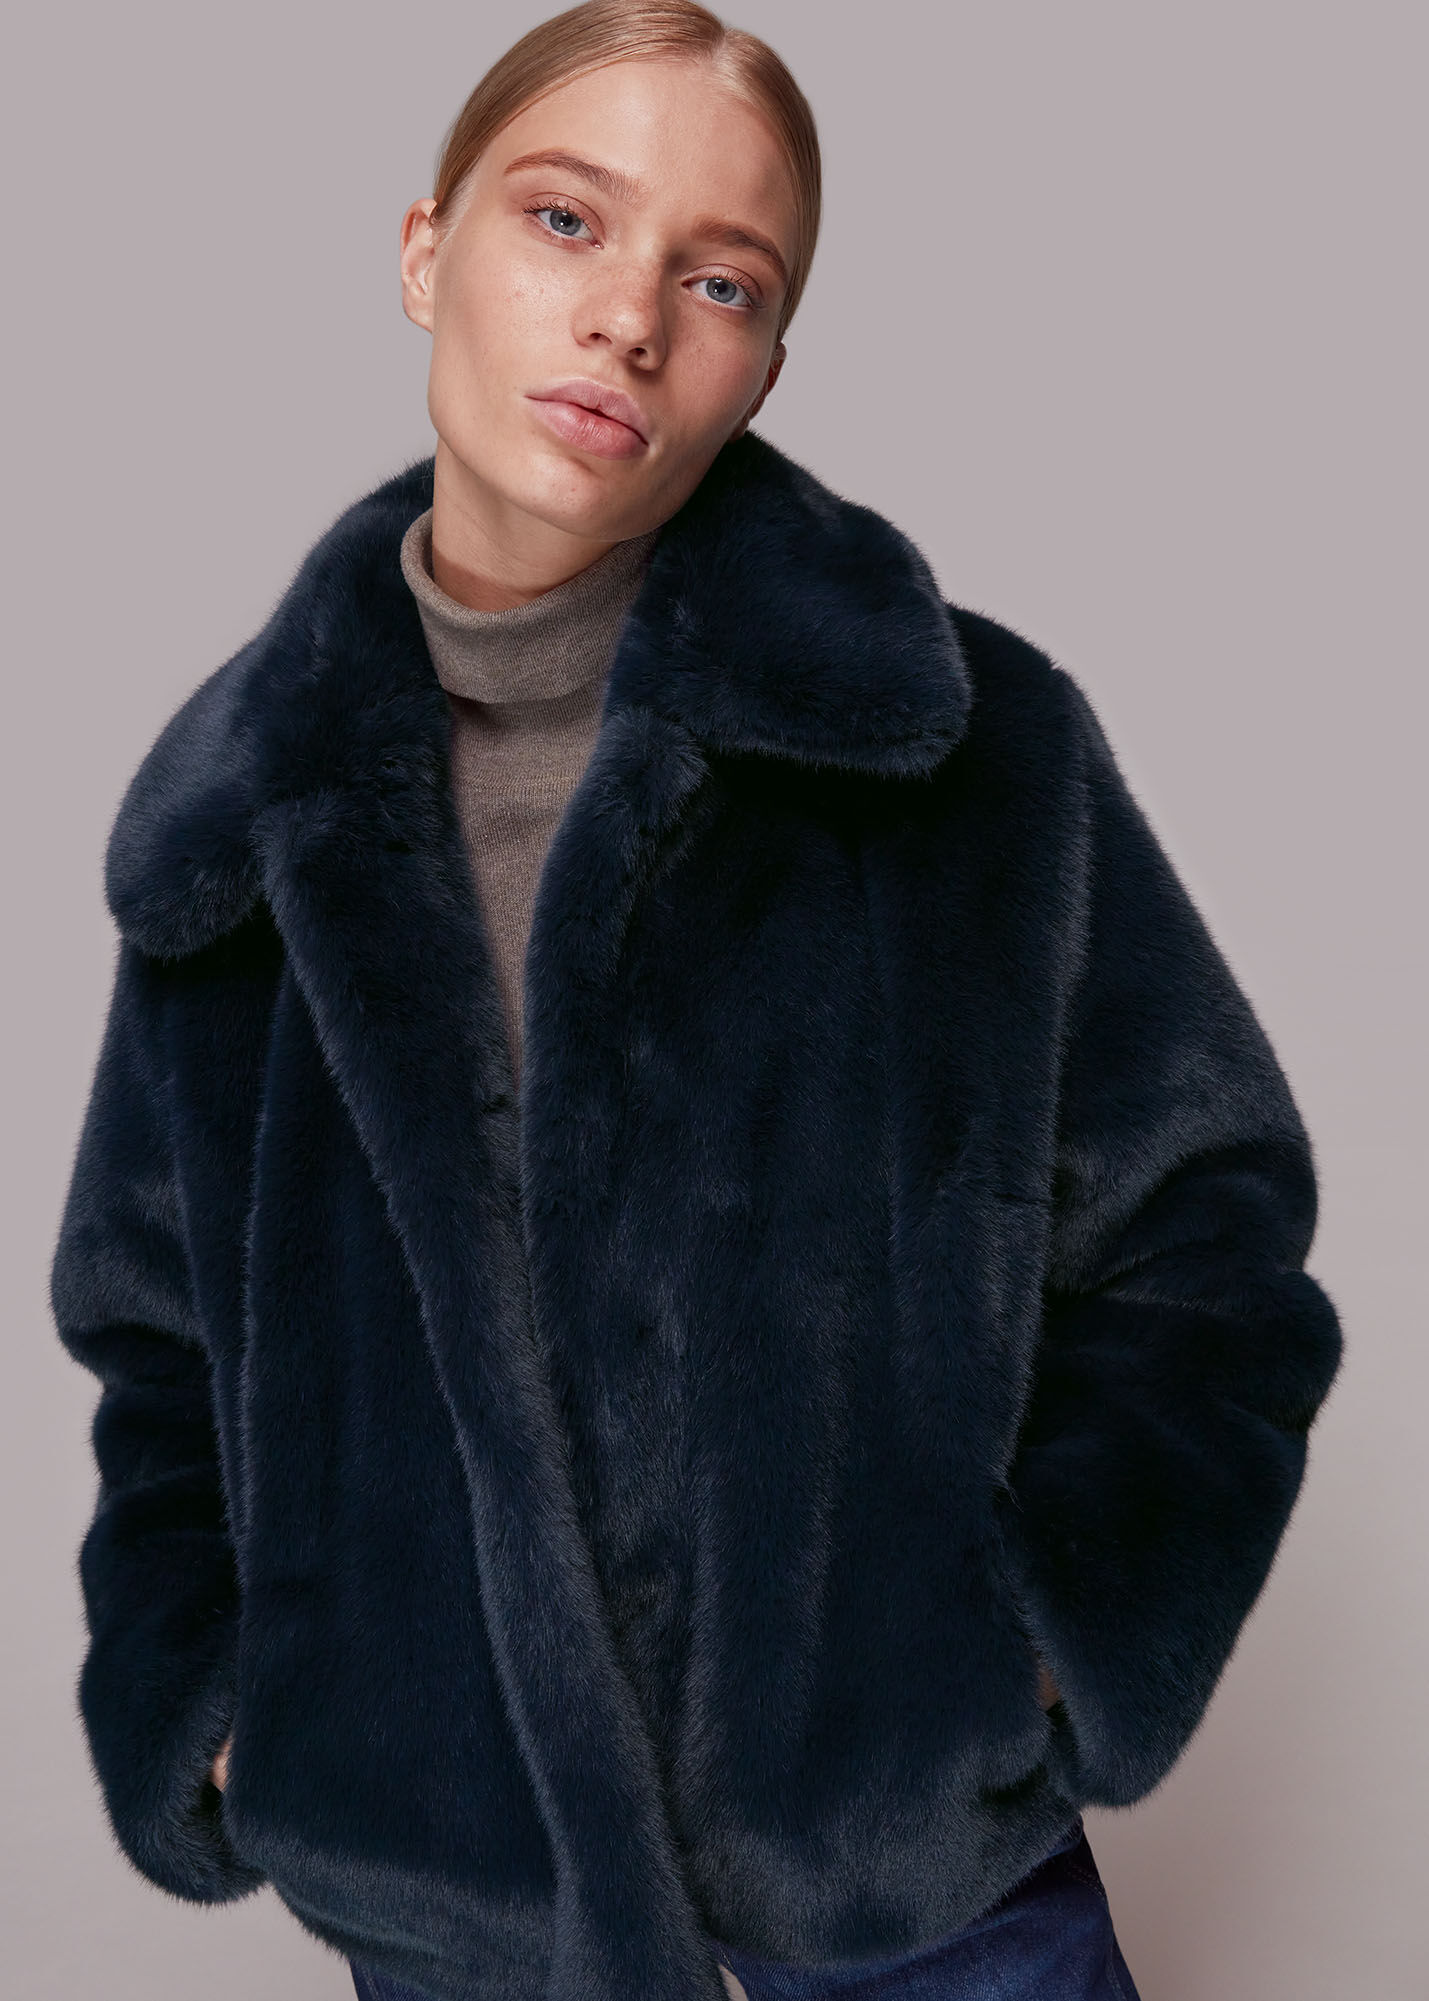 Macleria Fur Collar Coat - Women's Winter Coat Long - Parka - Black -  Styleitaly.eu